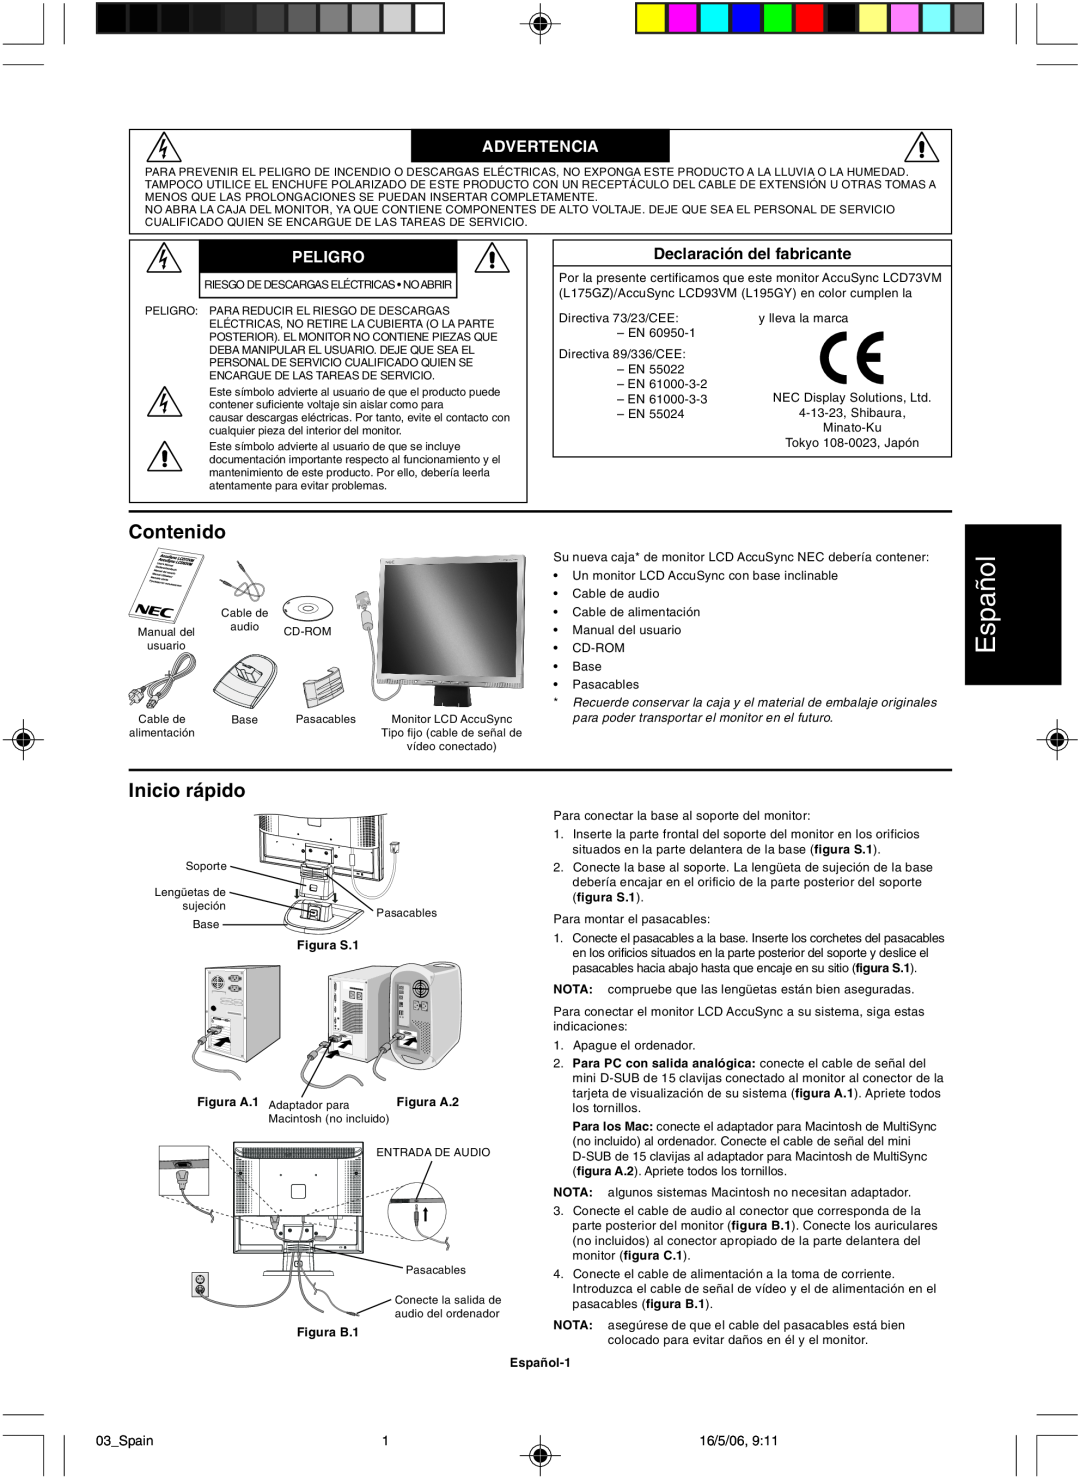 NEC LCD73VM user manual Español, Contenido, Inicio rápido, Advertencia, Peligro 